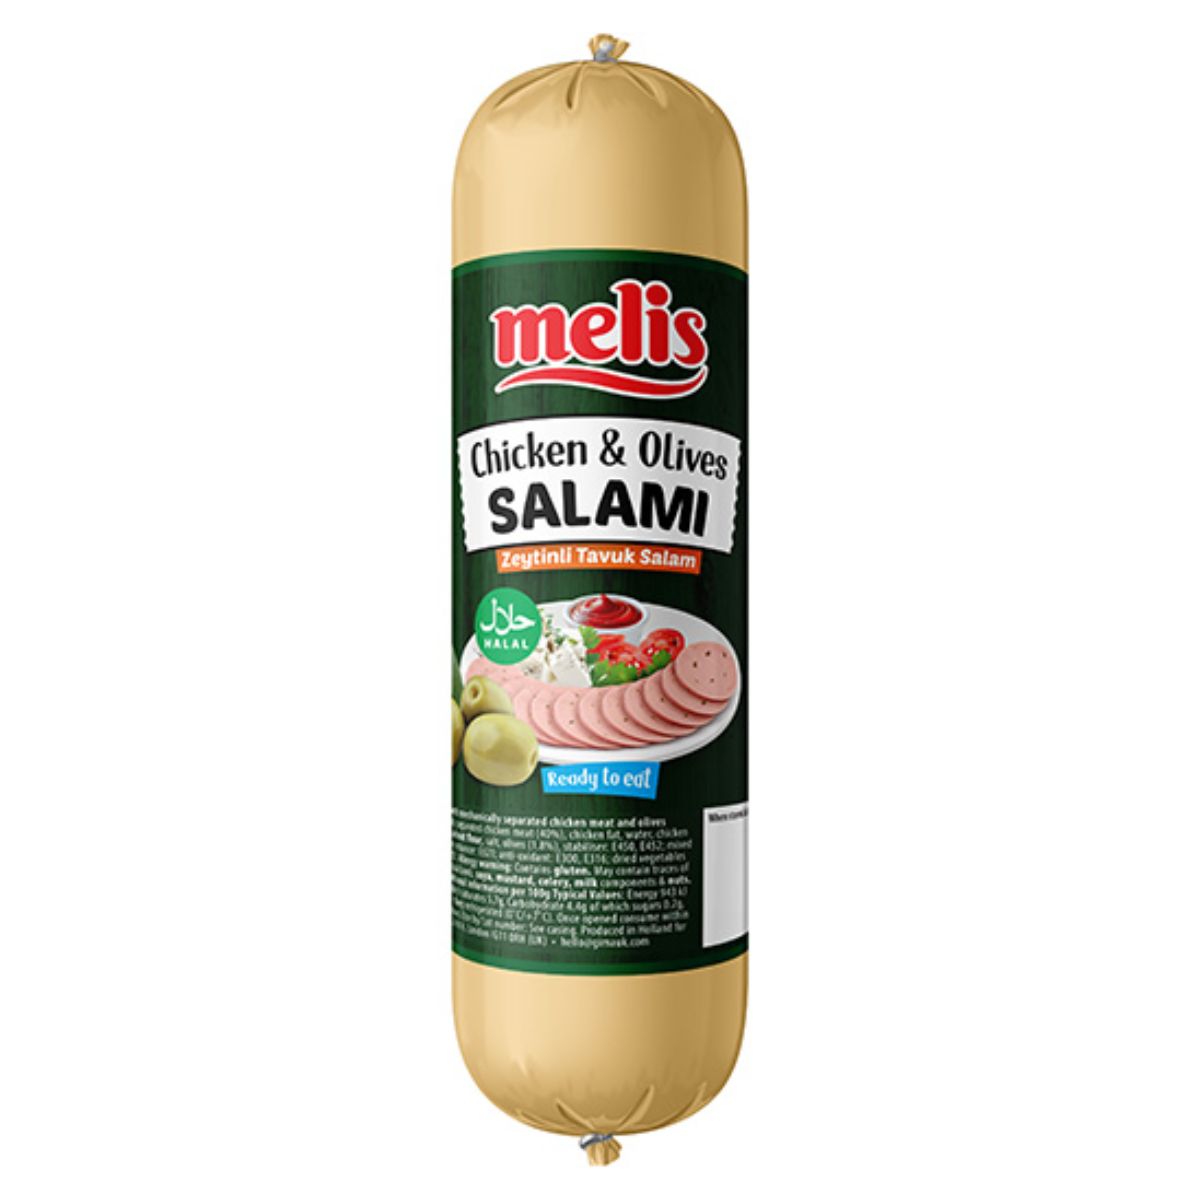 Melis - Chicken & Olive Salami (Halal) - 500g